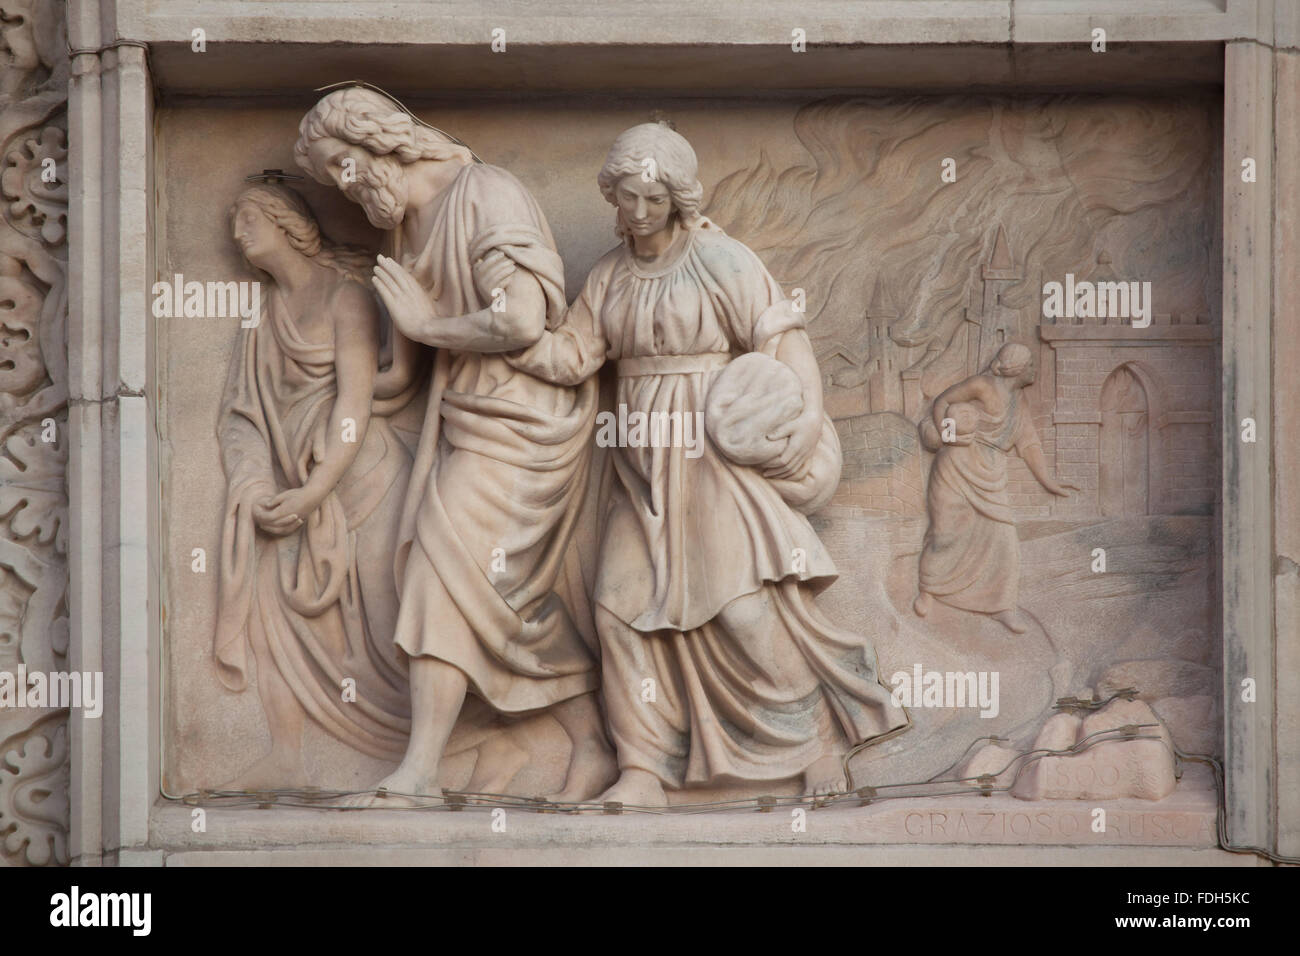 Lot und seine Töchter von Sodom fliehen. Marmorrelief (1800) des italienischen Bildhauers Grazioso Rusca an der Hauptfassade des Mailand C Stockfoto